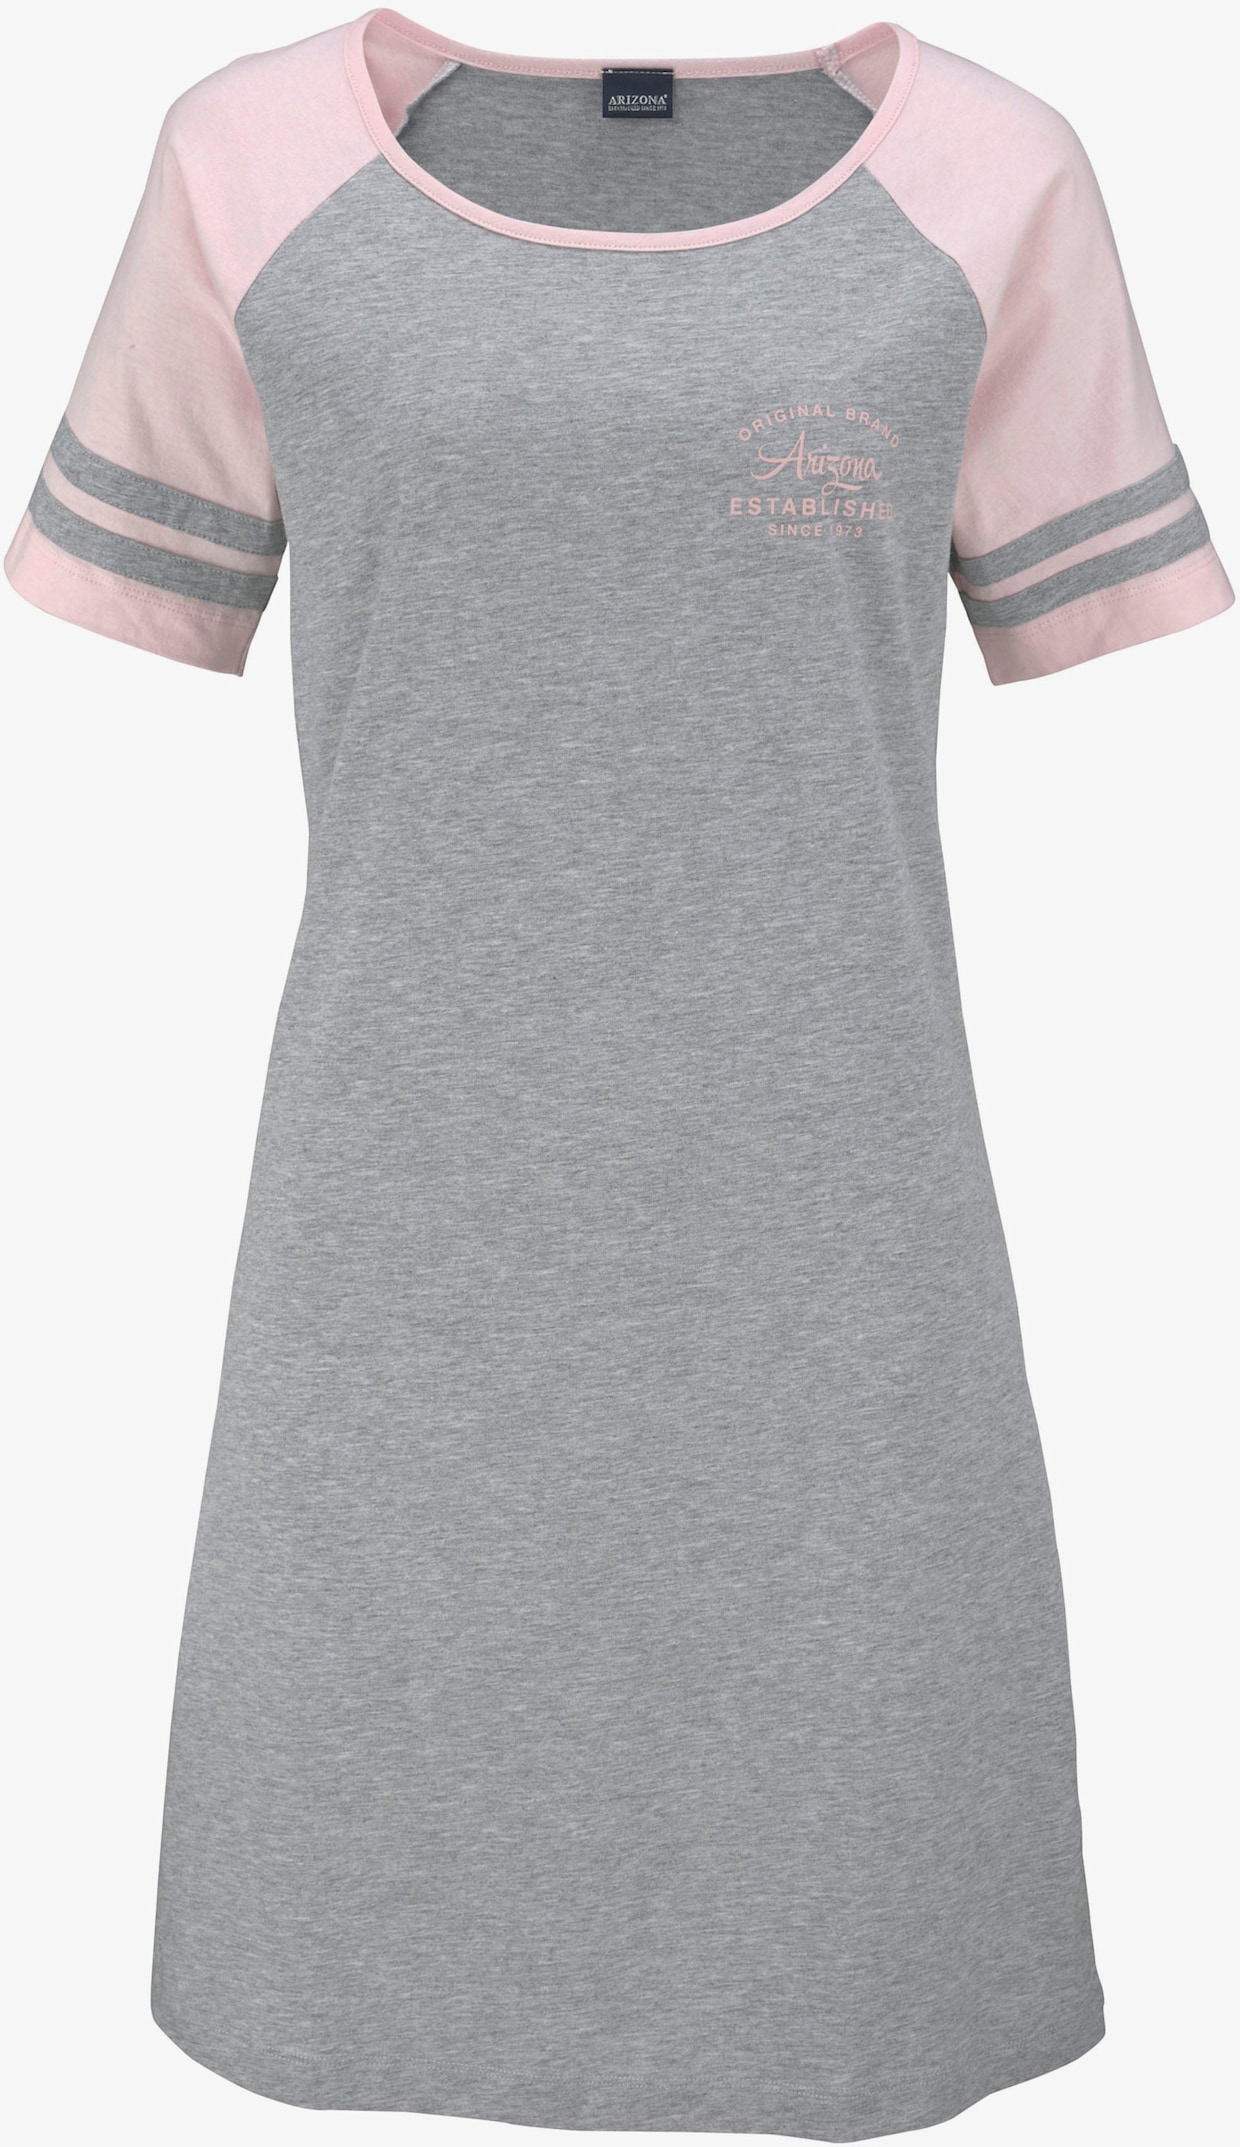 Arizona Nachthemd - grijs/roze